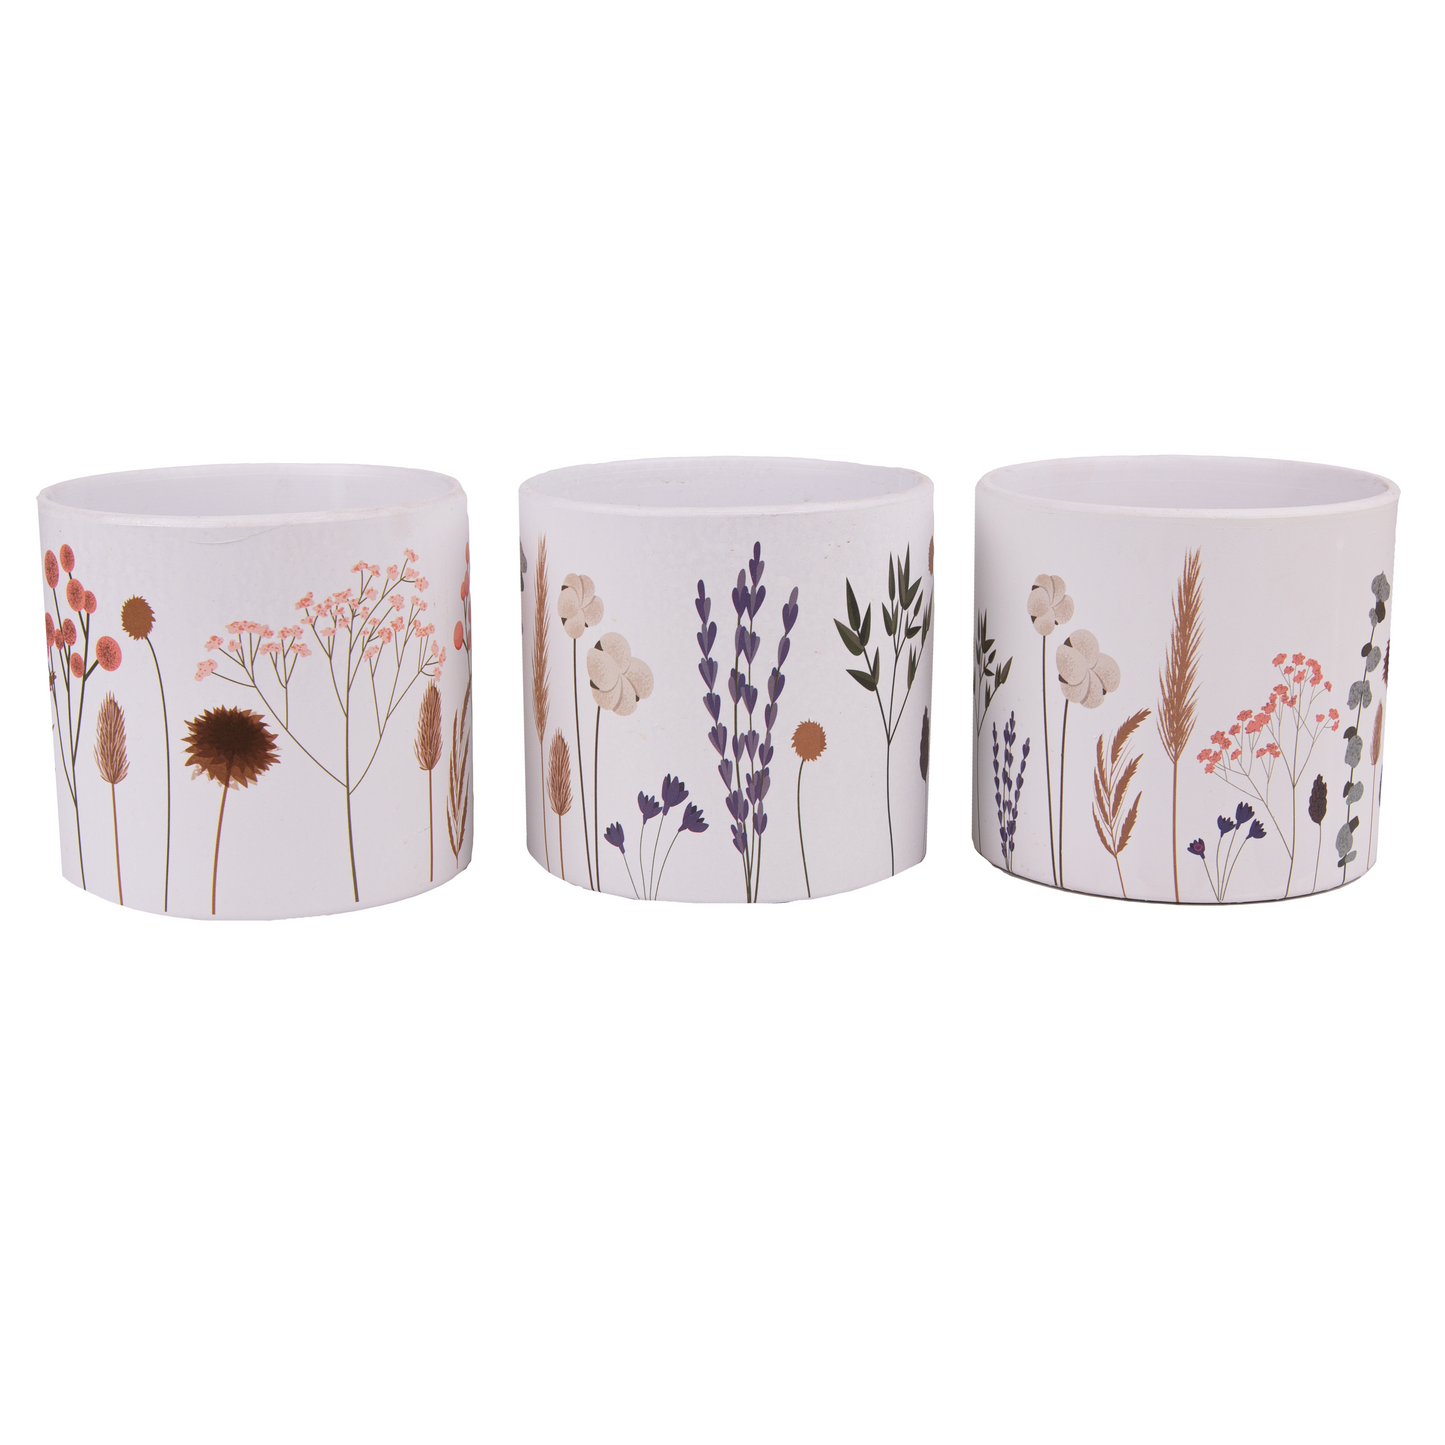 1x Wild Floral Design Ceramic Pot